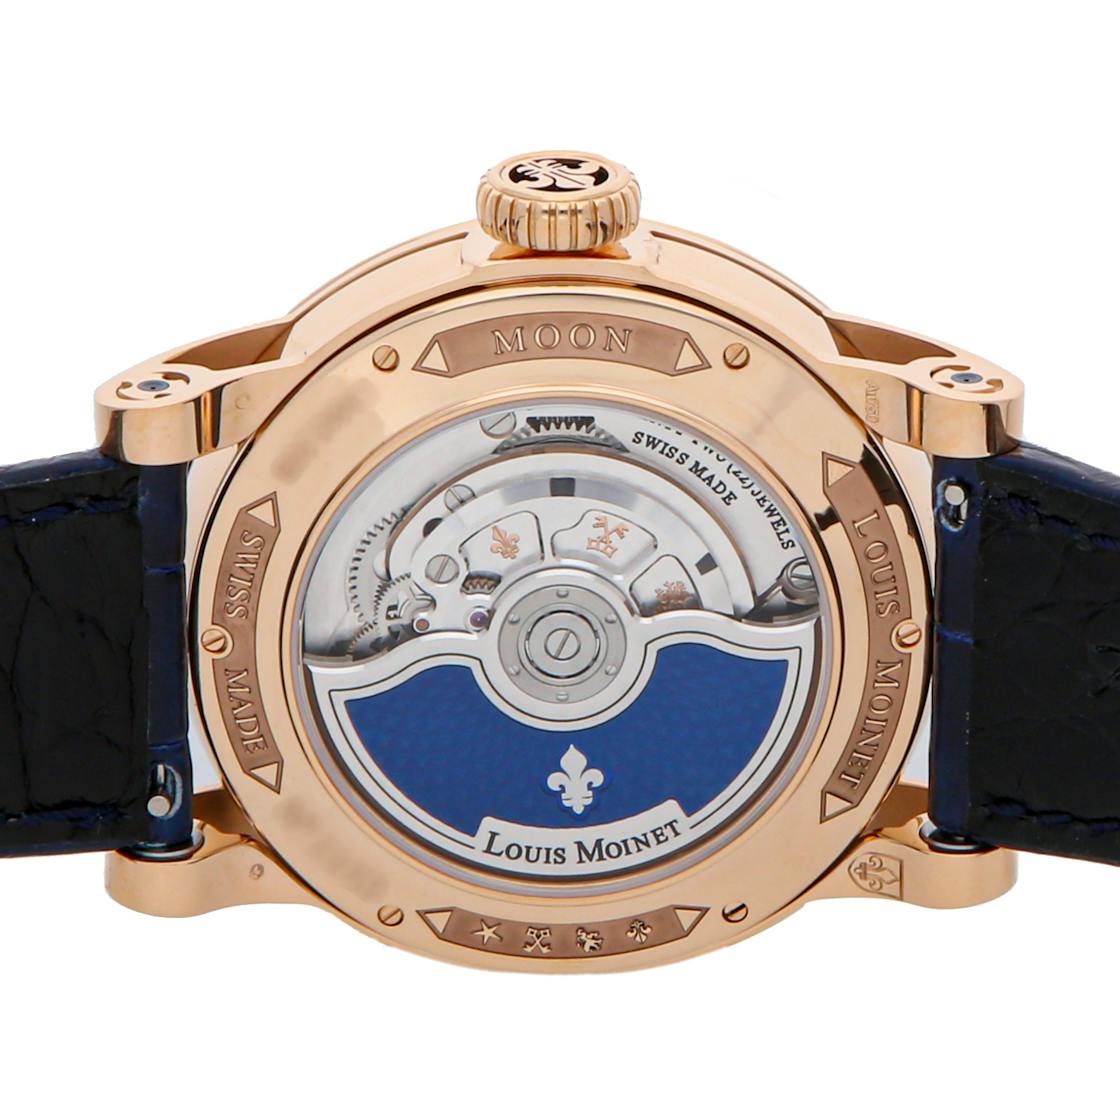 Louis Moinet Moon 45.4 mm Watch in Blue Dial